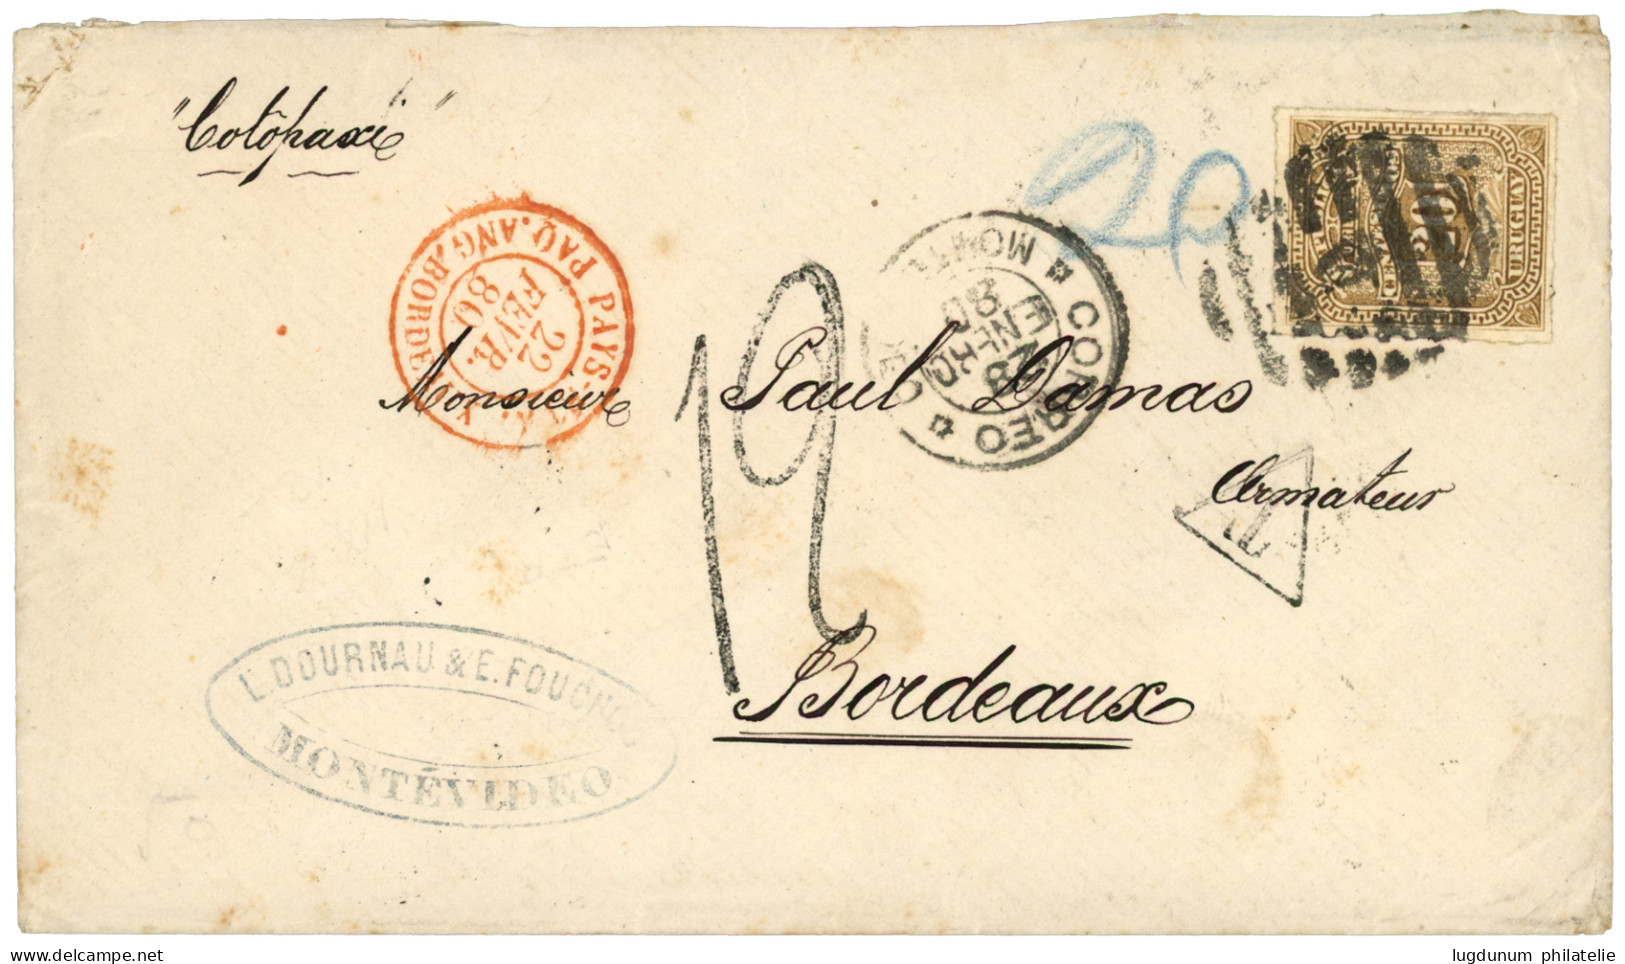 1880 URUGUAY 20c + Taxe 12 + PAYS ETR. PAQ. ANG. BORDEAUX Sur Enveloppe Pour BORDEAUX. TTB. - Correo Marítimo